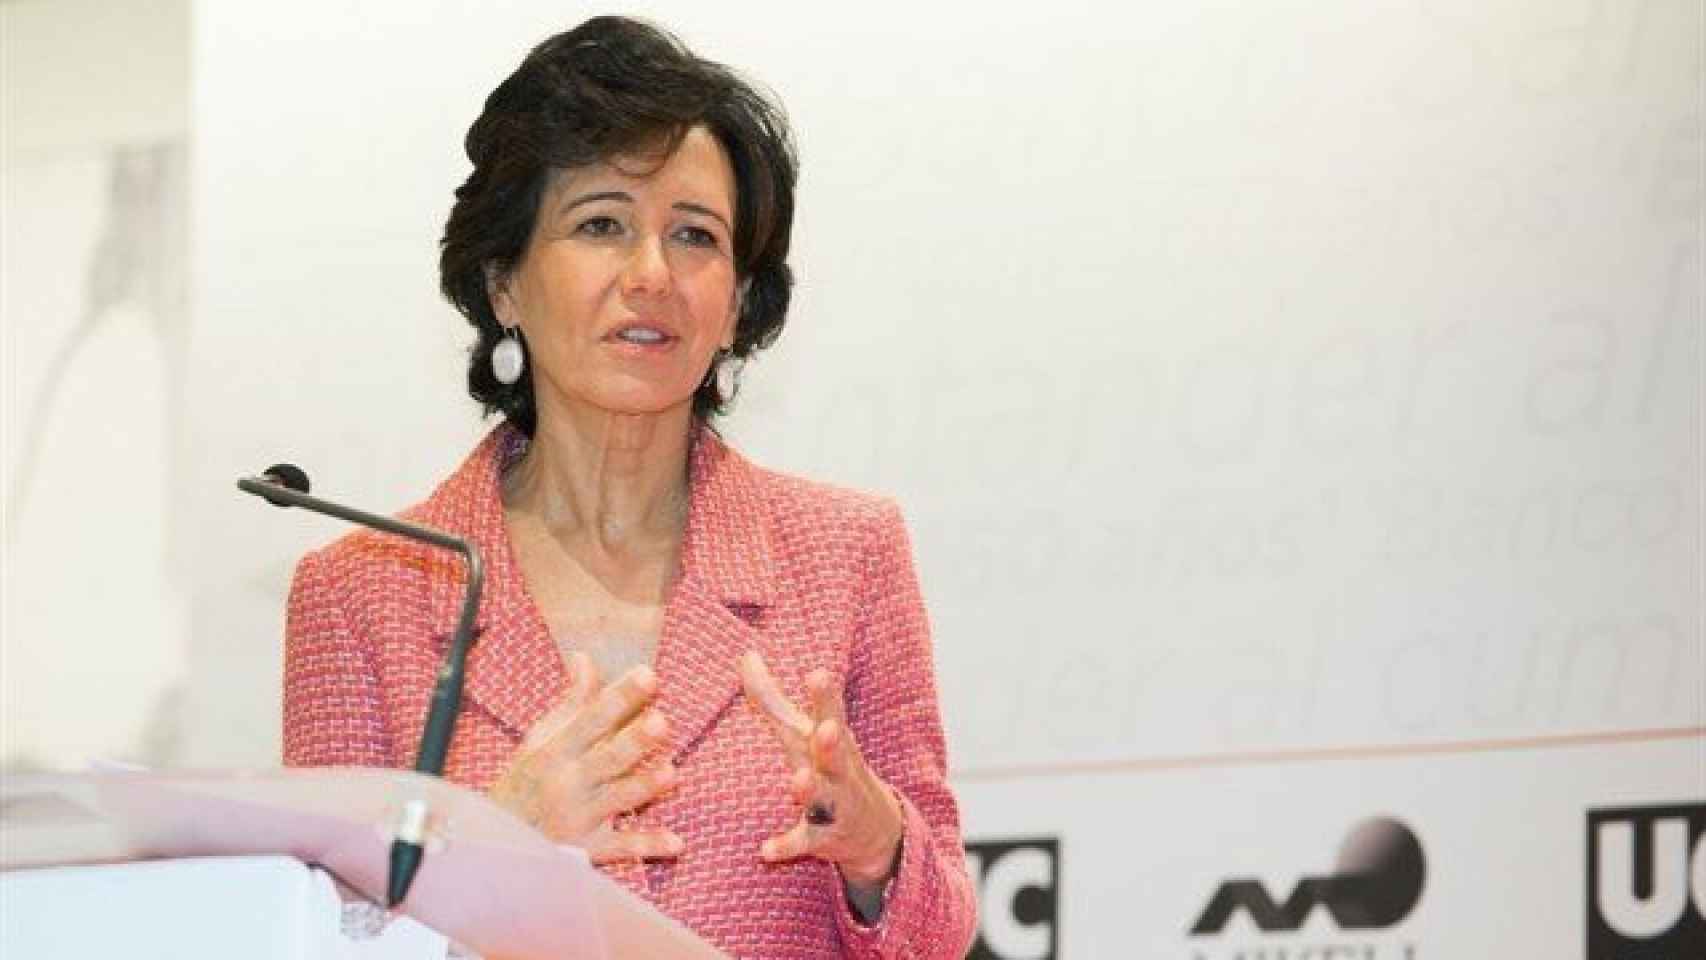 La presidenta del Banco Santander, Ana Botín / CG